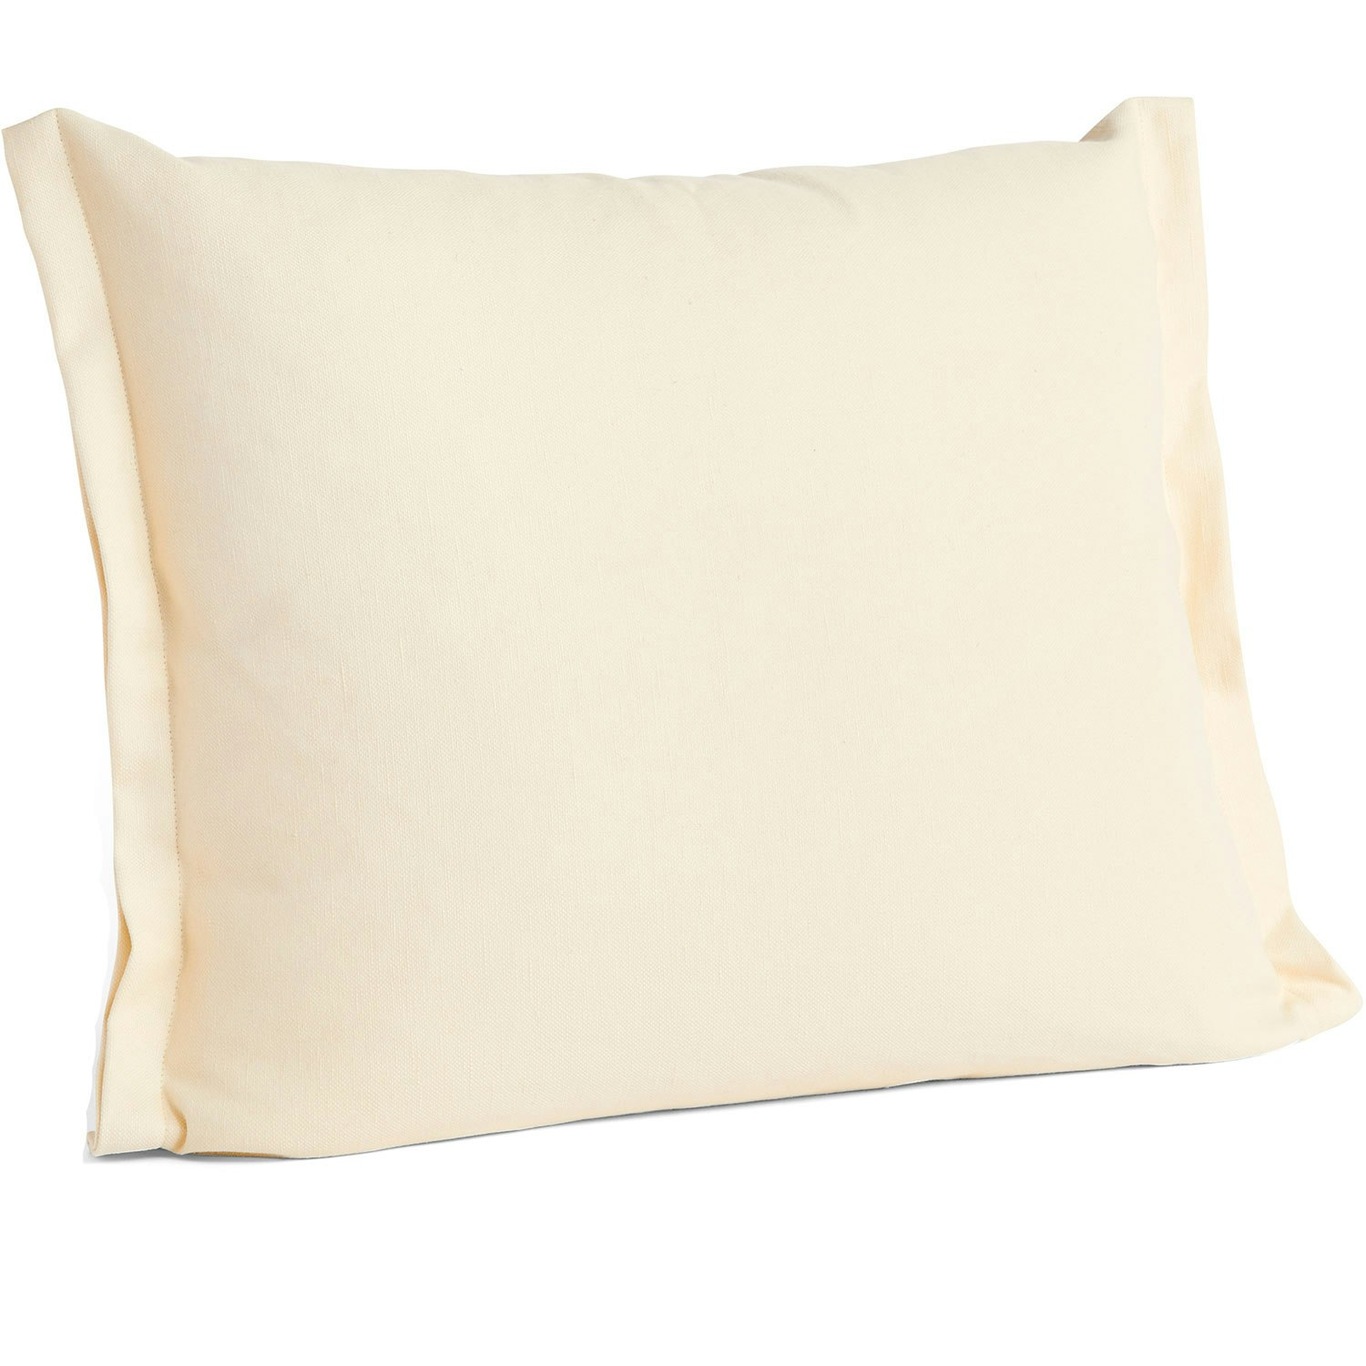 Plica Planar Cushion 55x60 cm, Ivory